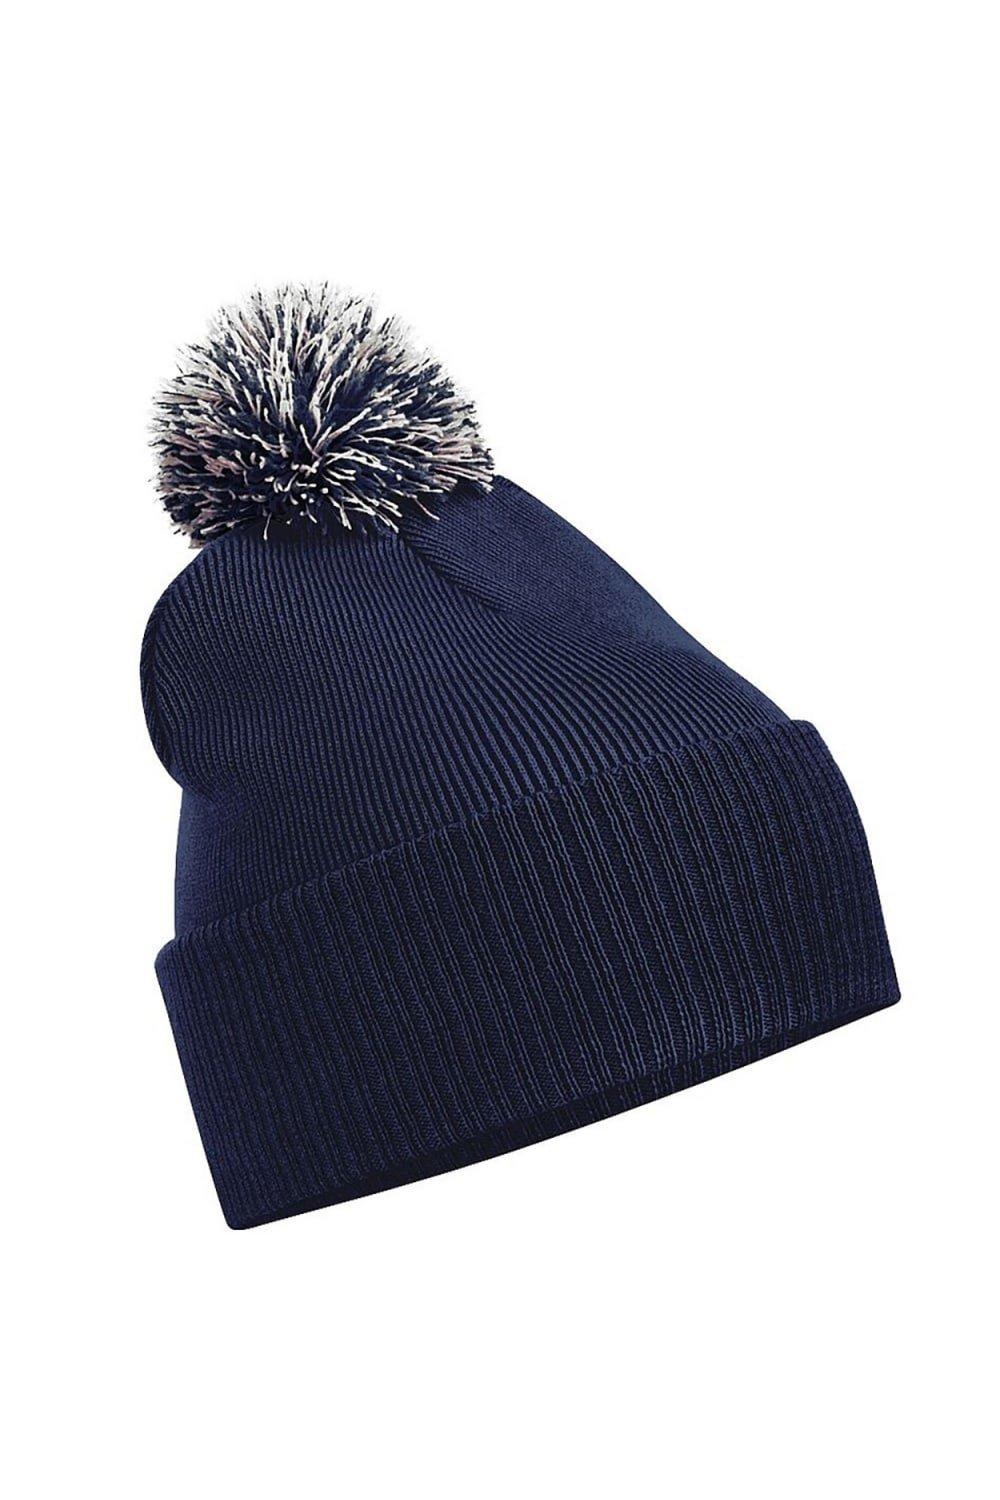 Зимняя шапка Snowstar Duo Extreme Beechfield, темно-синий зимняя шапка snowstar duo extreme beechfield серый